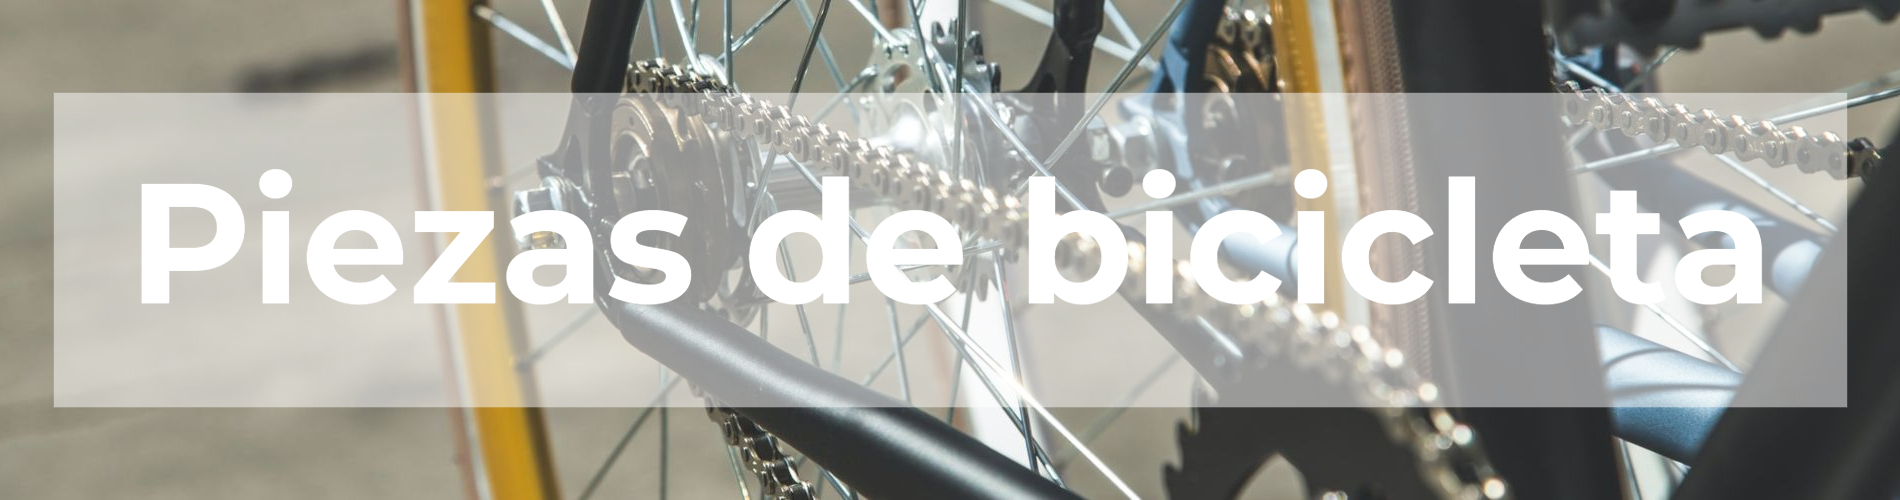 Piezas-de-bicicleta-categorypage_1900x500